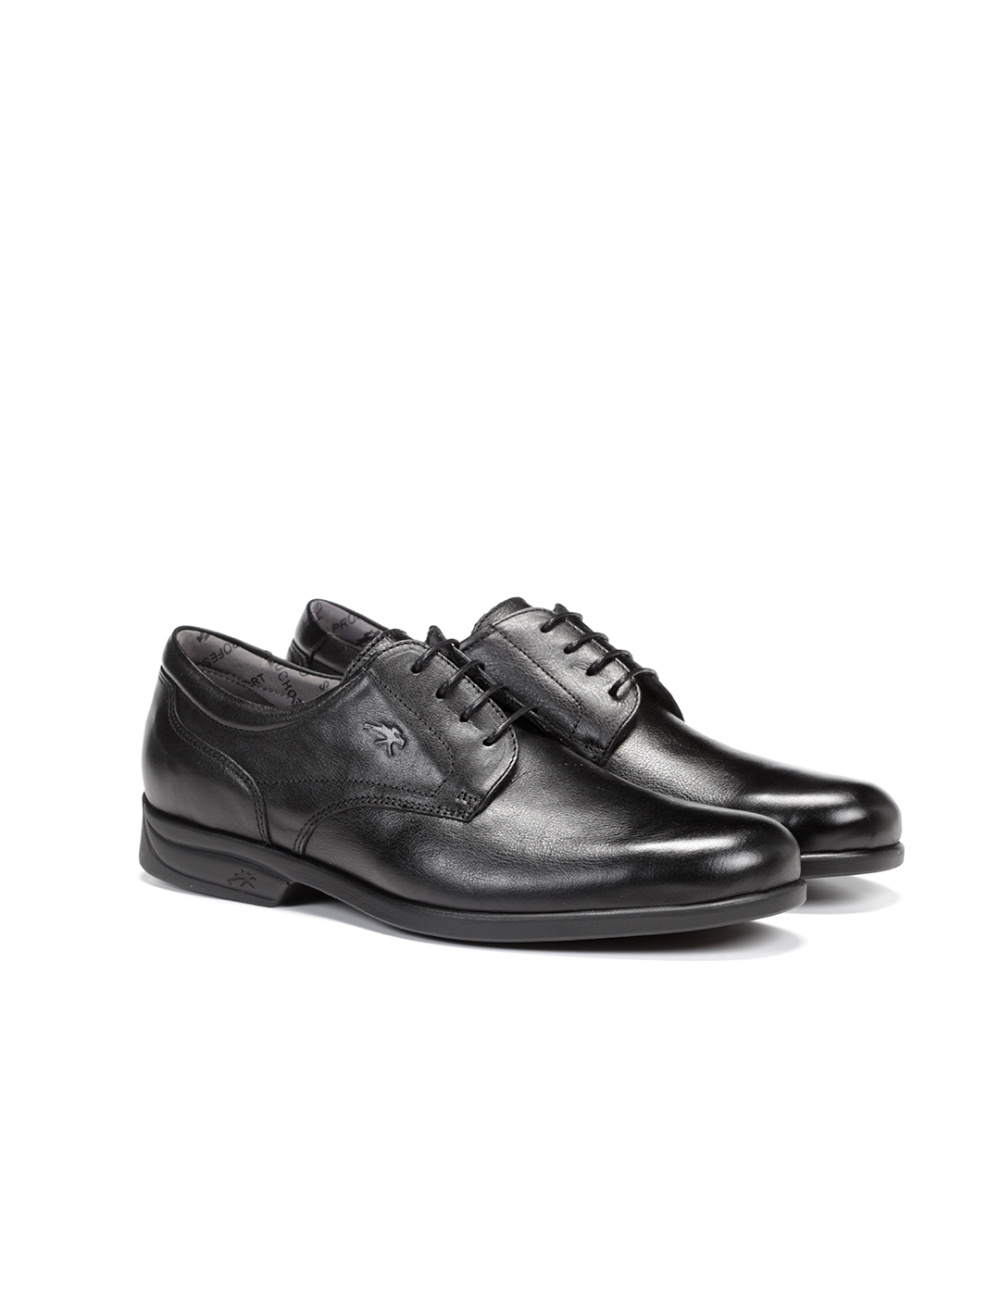 Fluchos - Zapato casual de hombre 8904